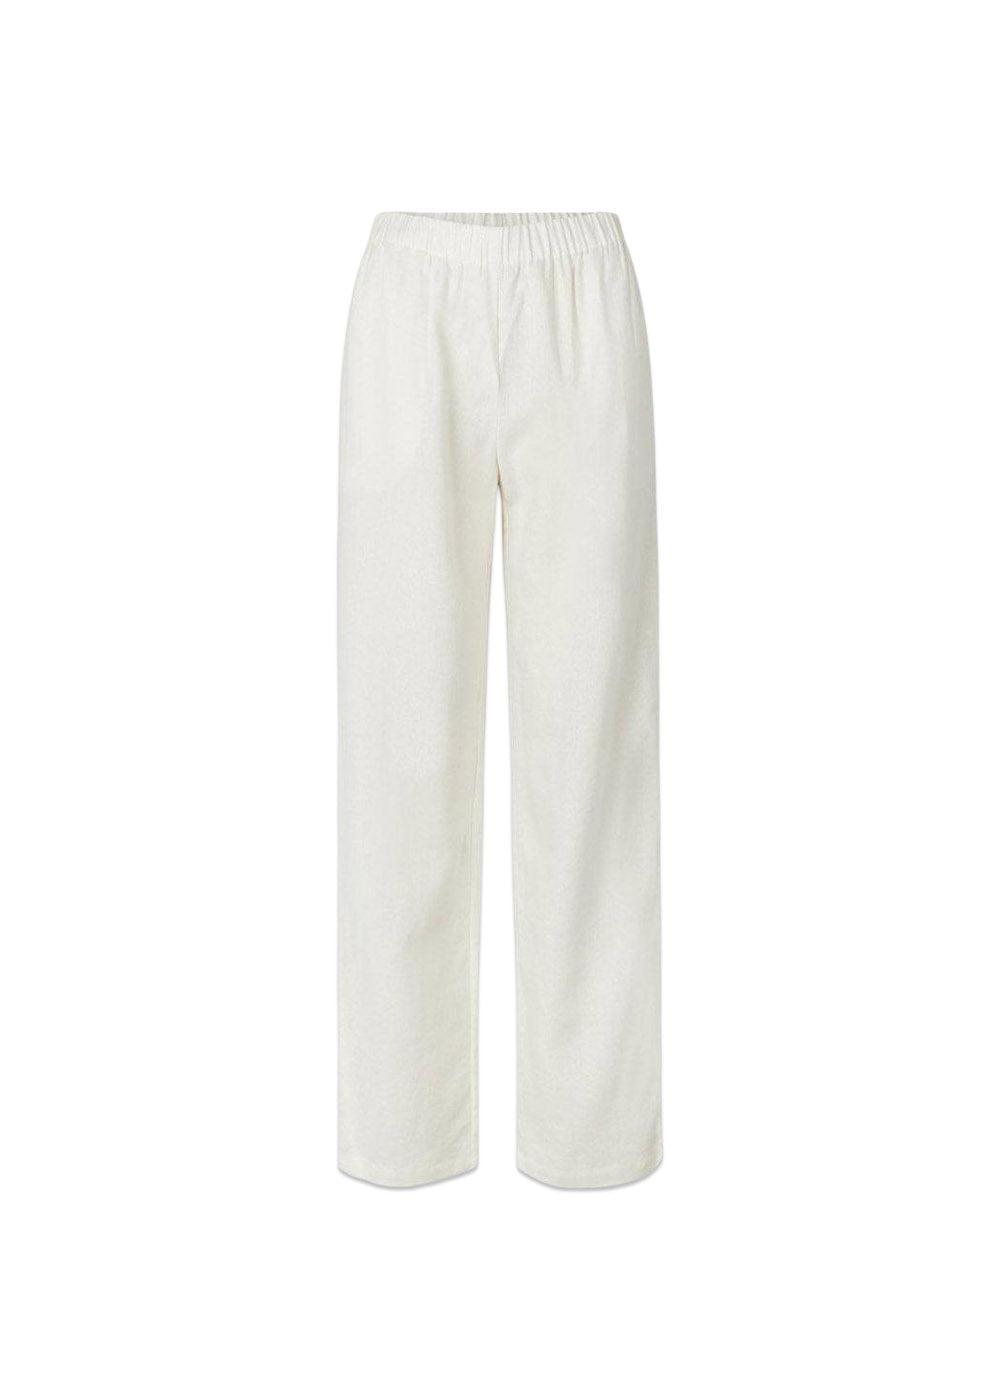 Modströms TulsiMD pants - Soft White. Køb bukser her.